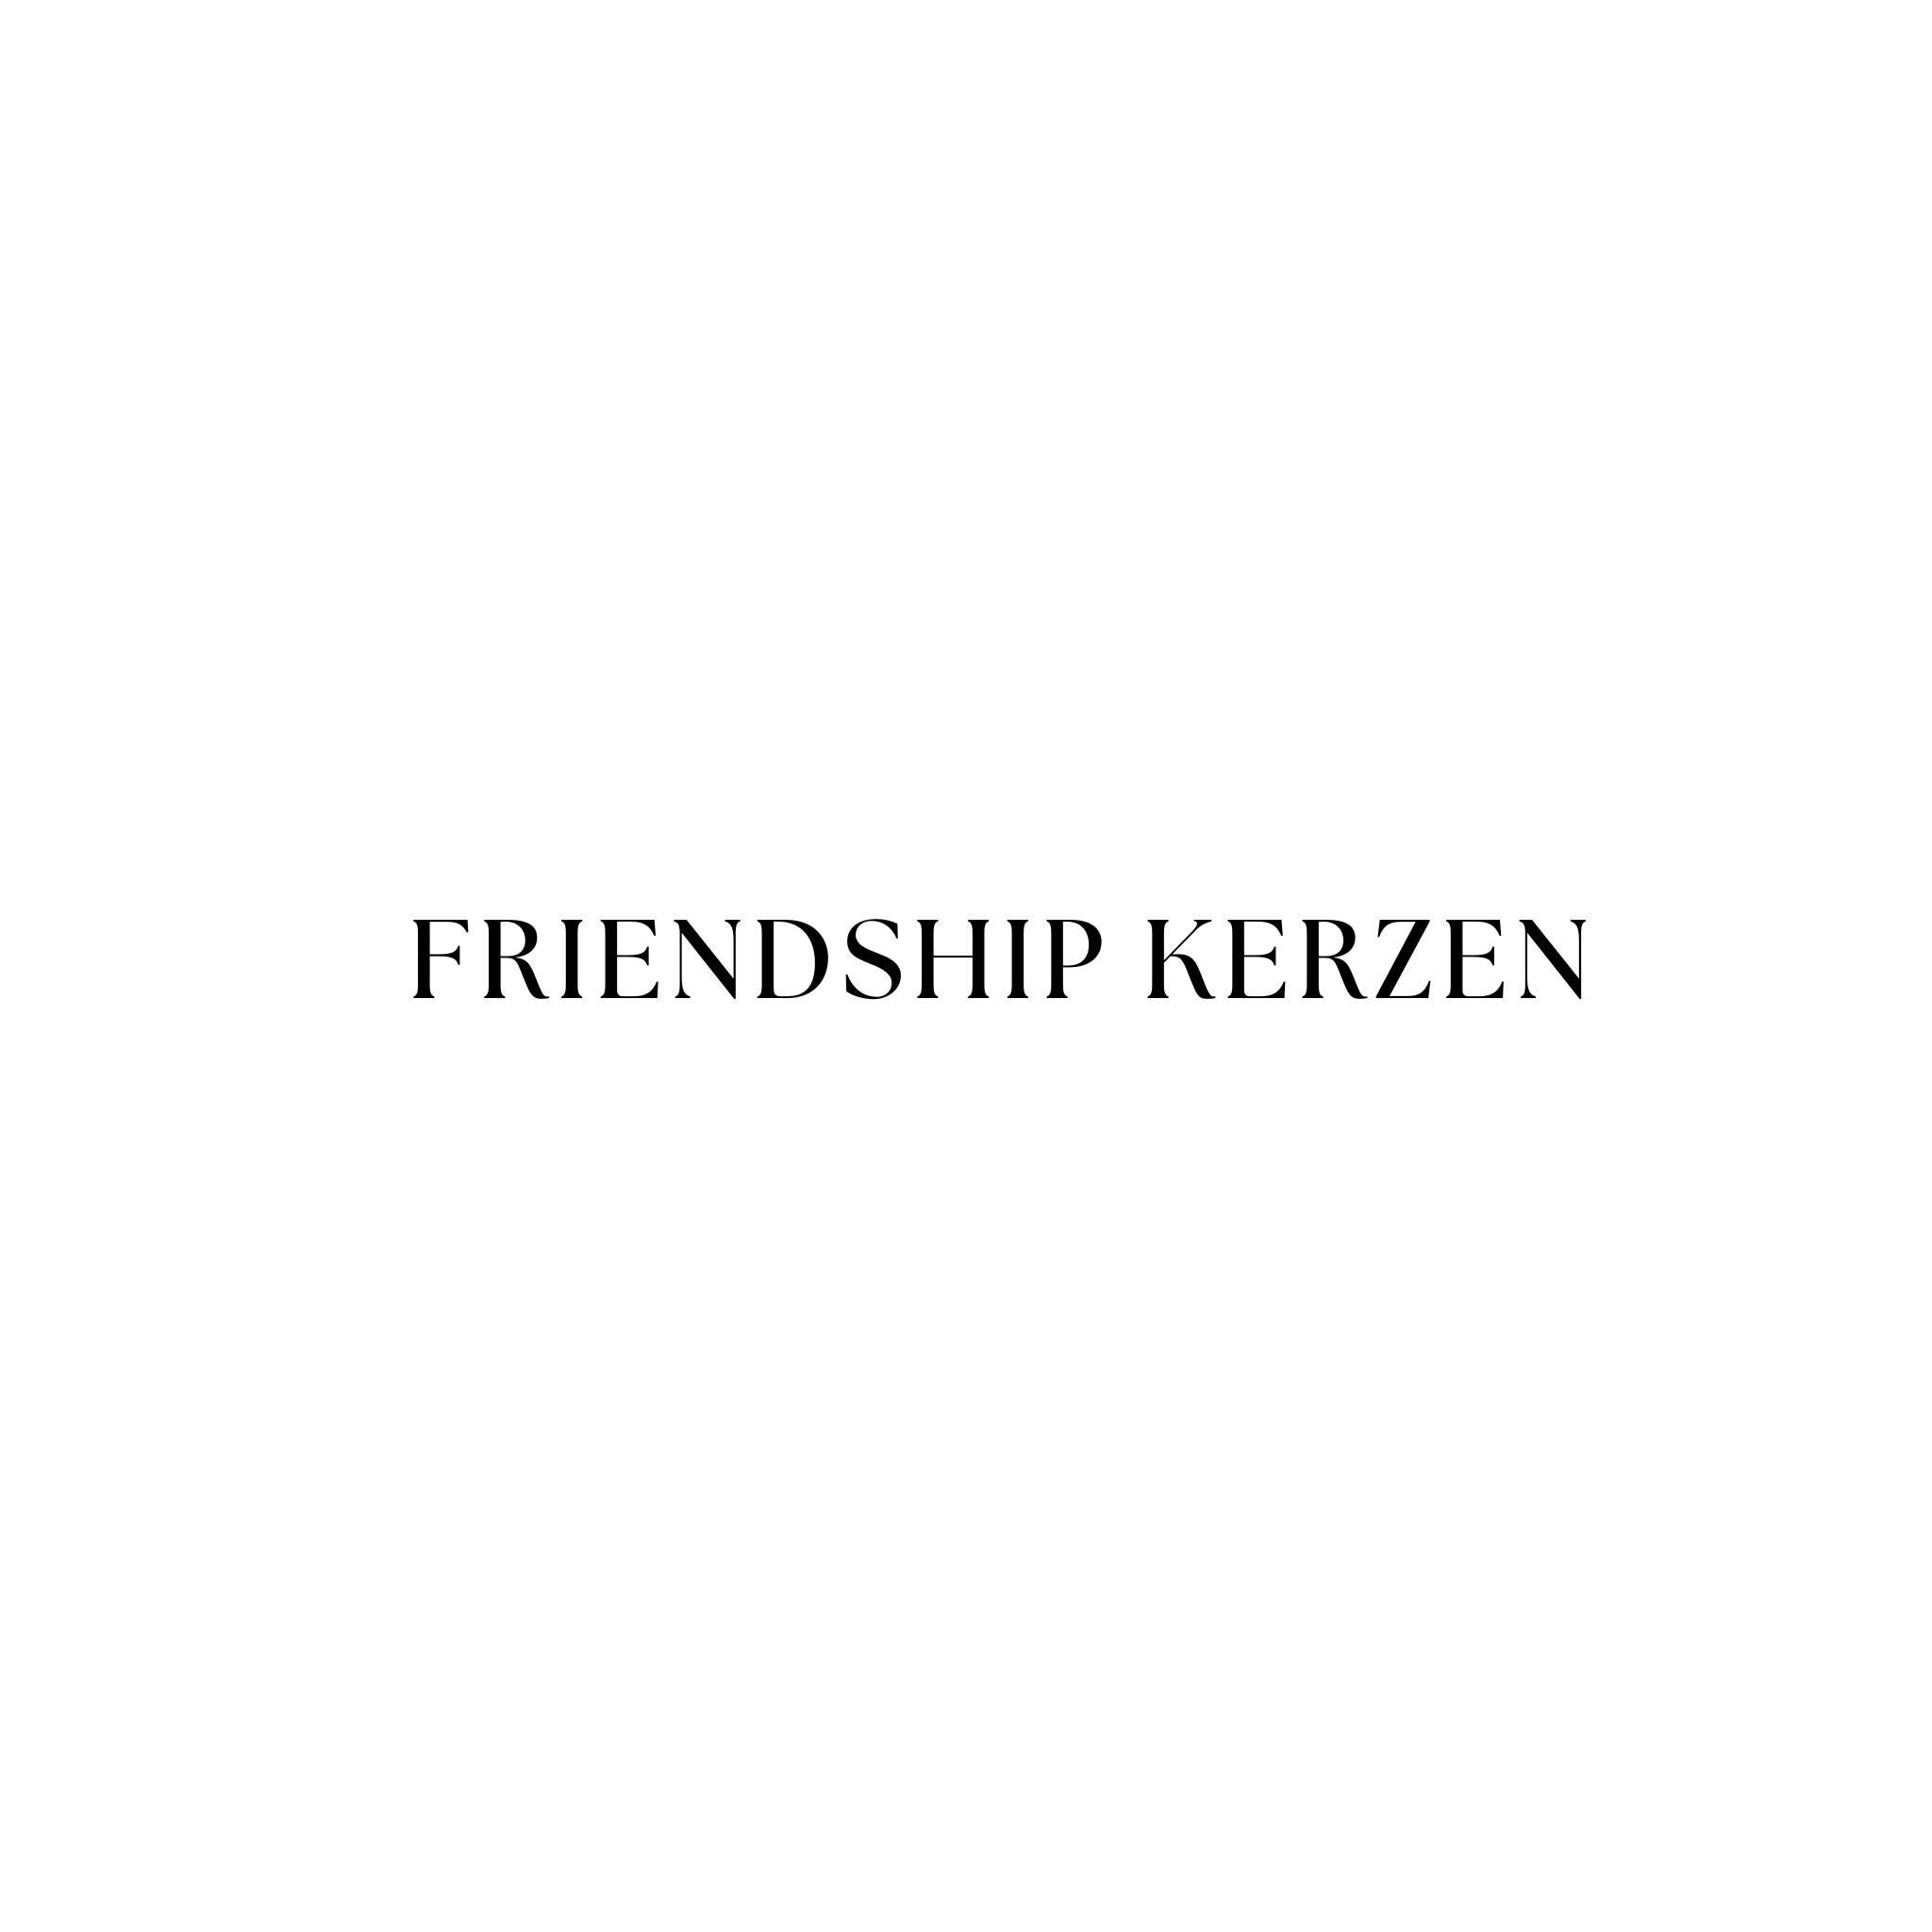 FRIENDSHIP KERZEN